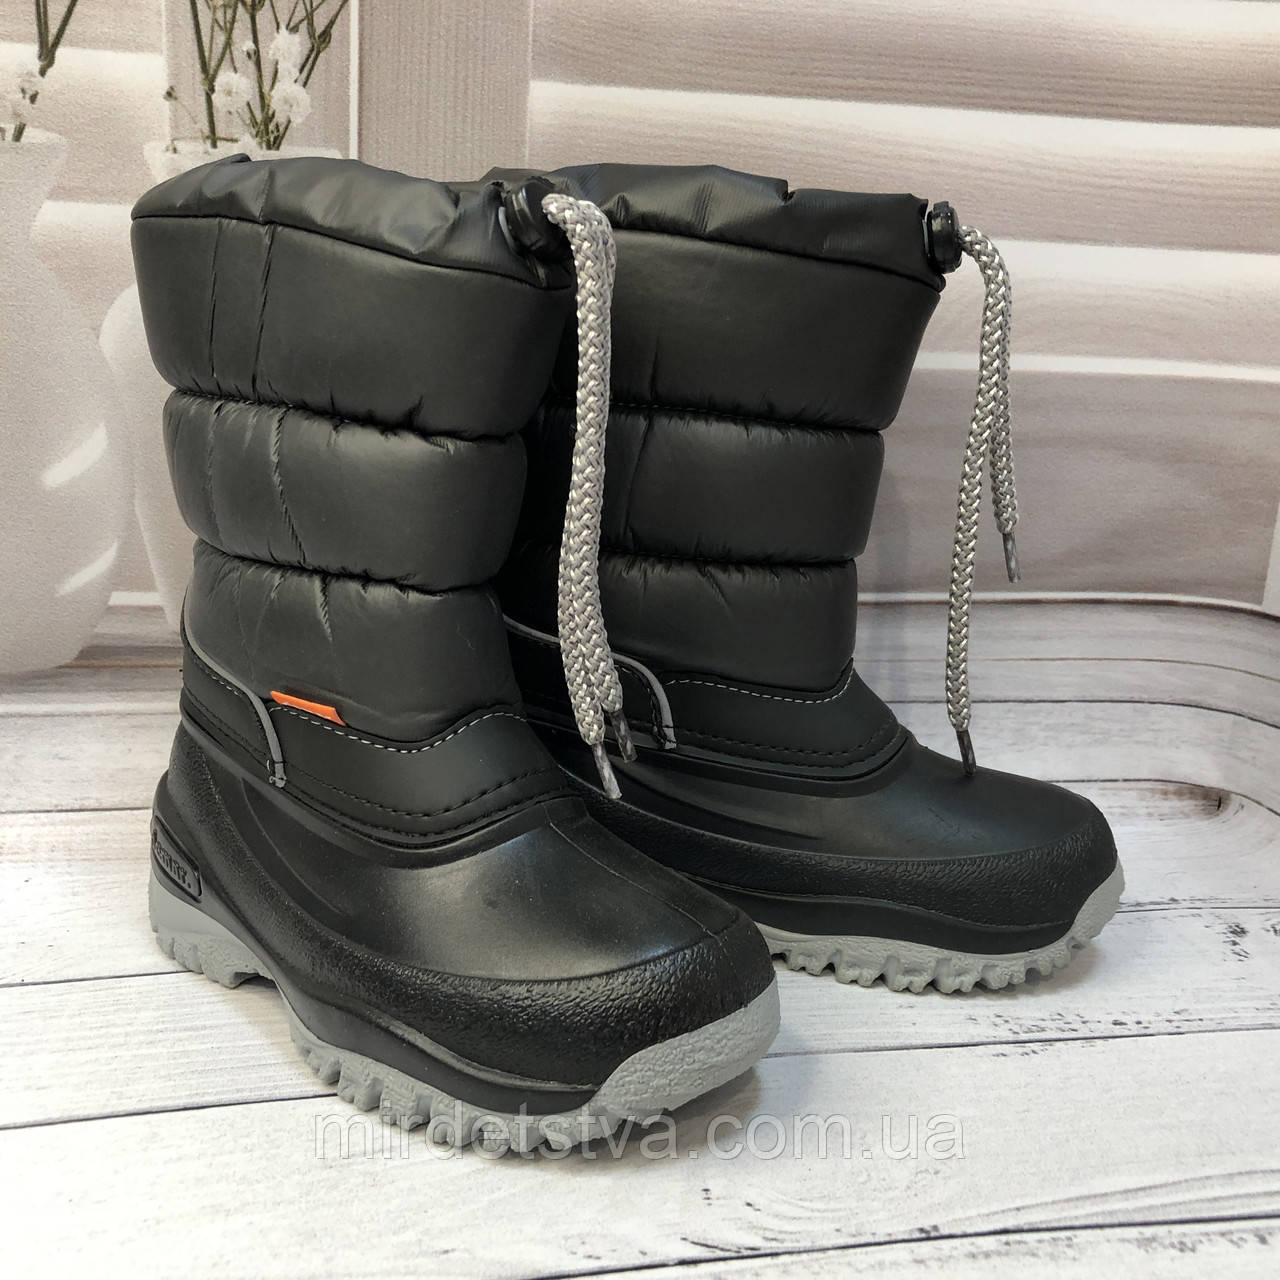 Зимові дитячі чоботи сноубутси для хлопчика Demar LUCKY чорні розмір 27-28